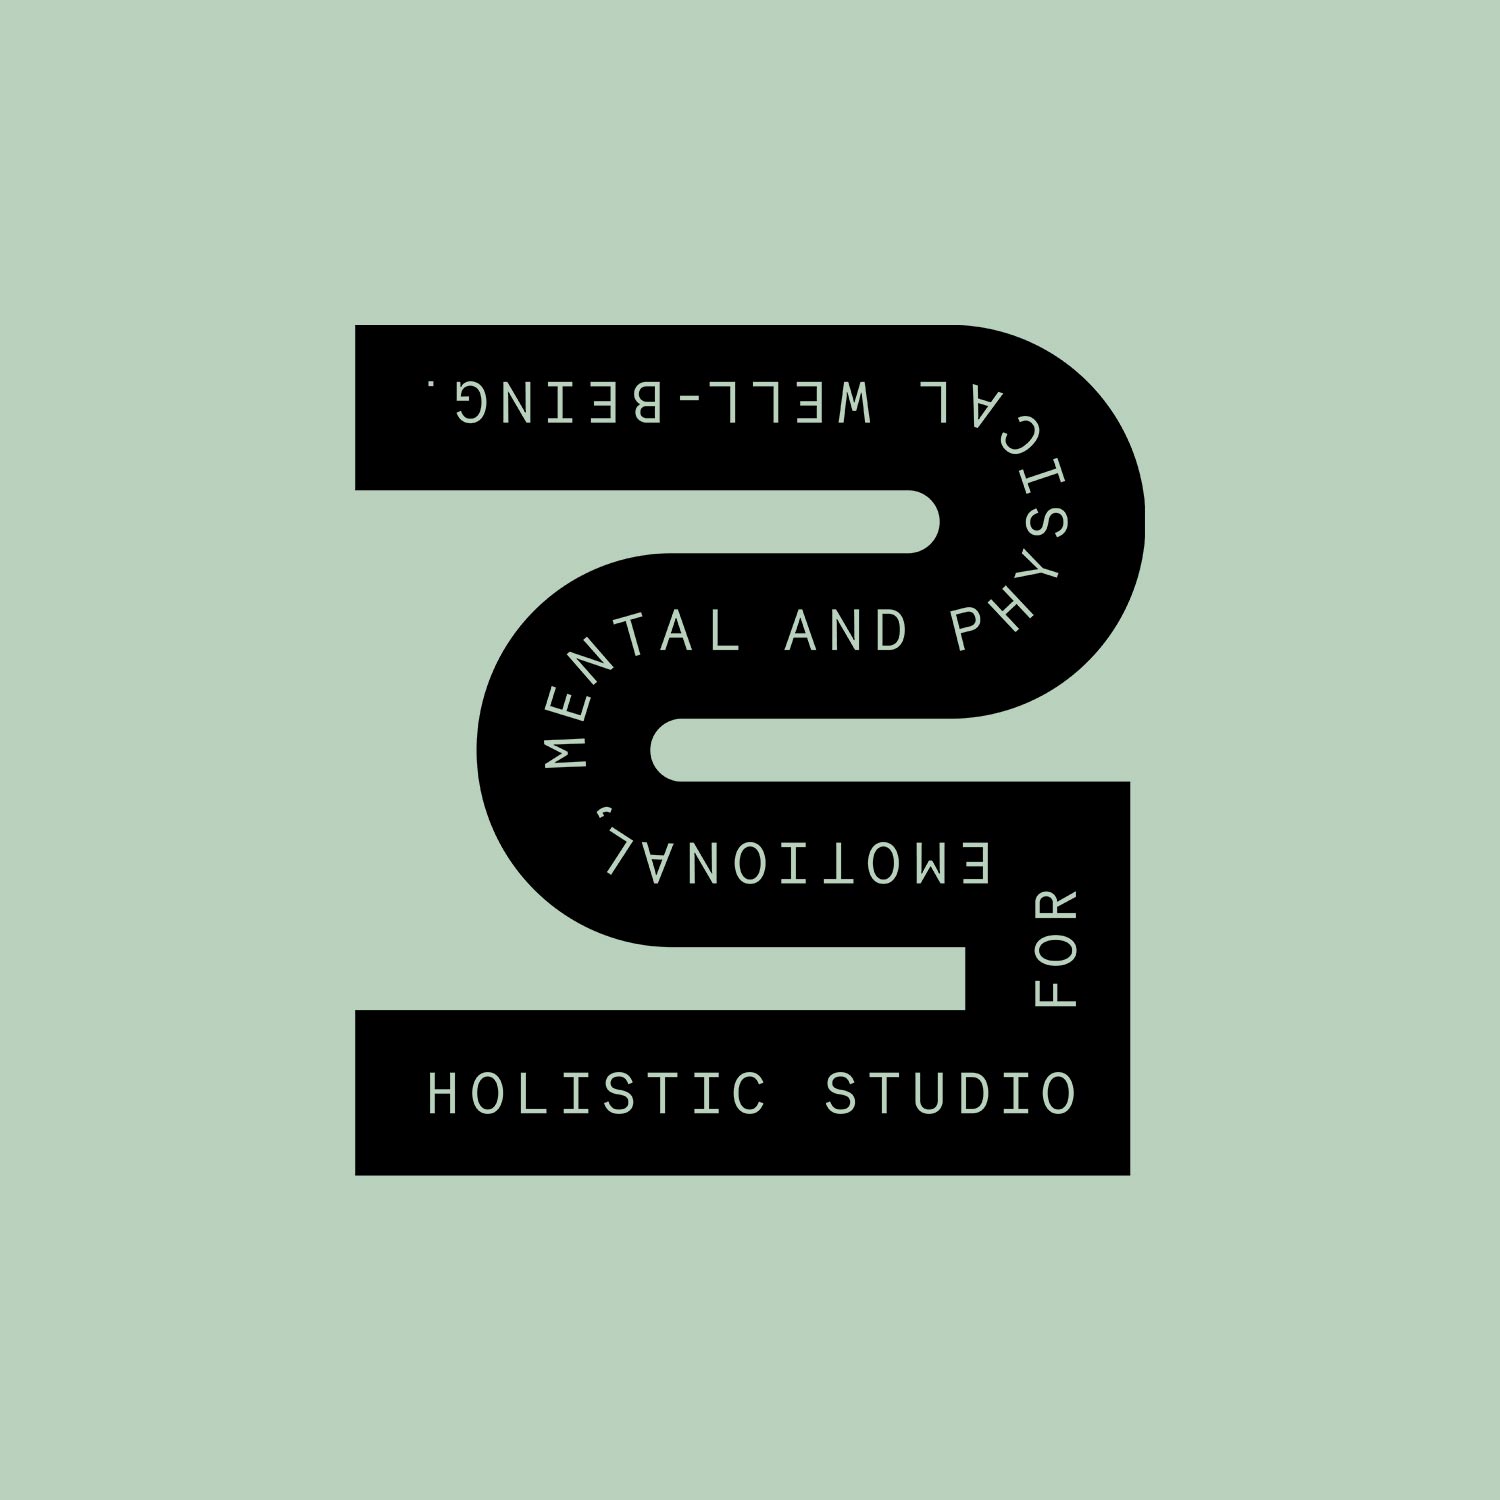 Logo Design für BIRTH Studios